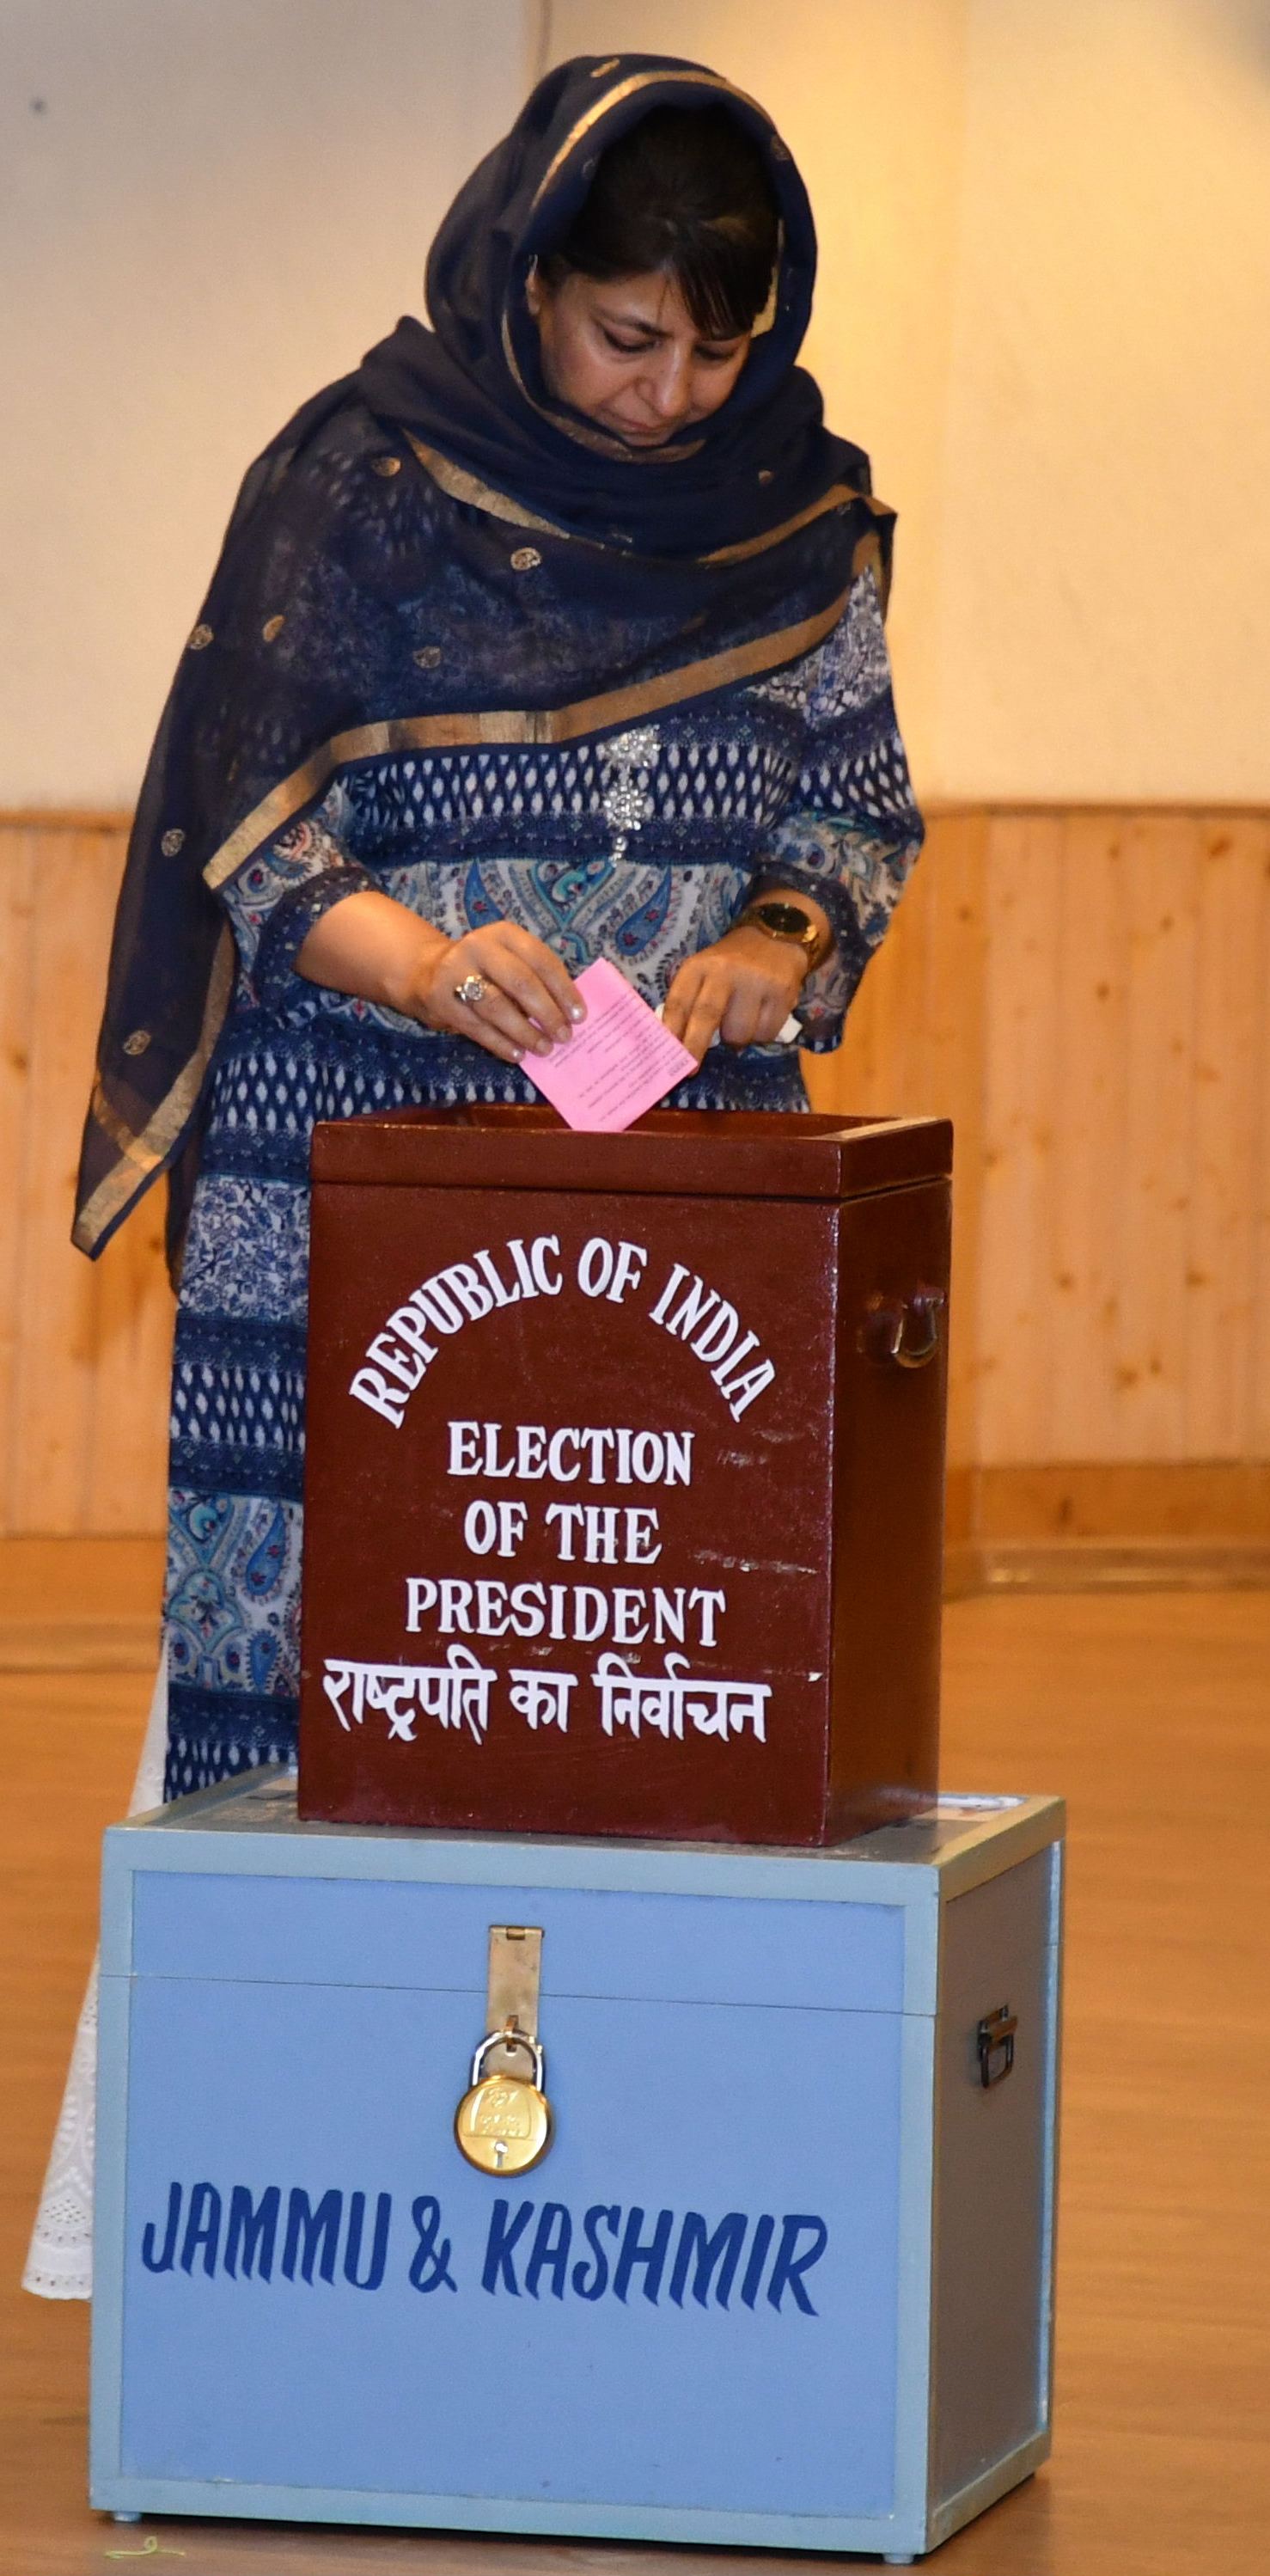 Mehbooba Mufti voting for president